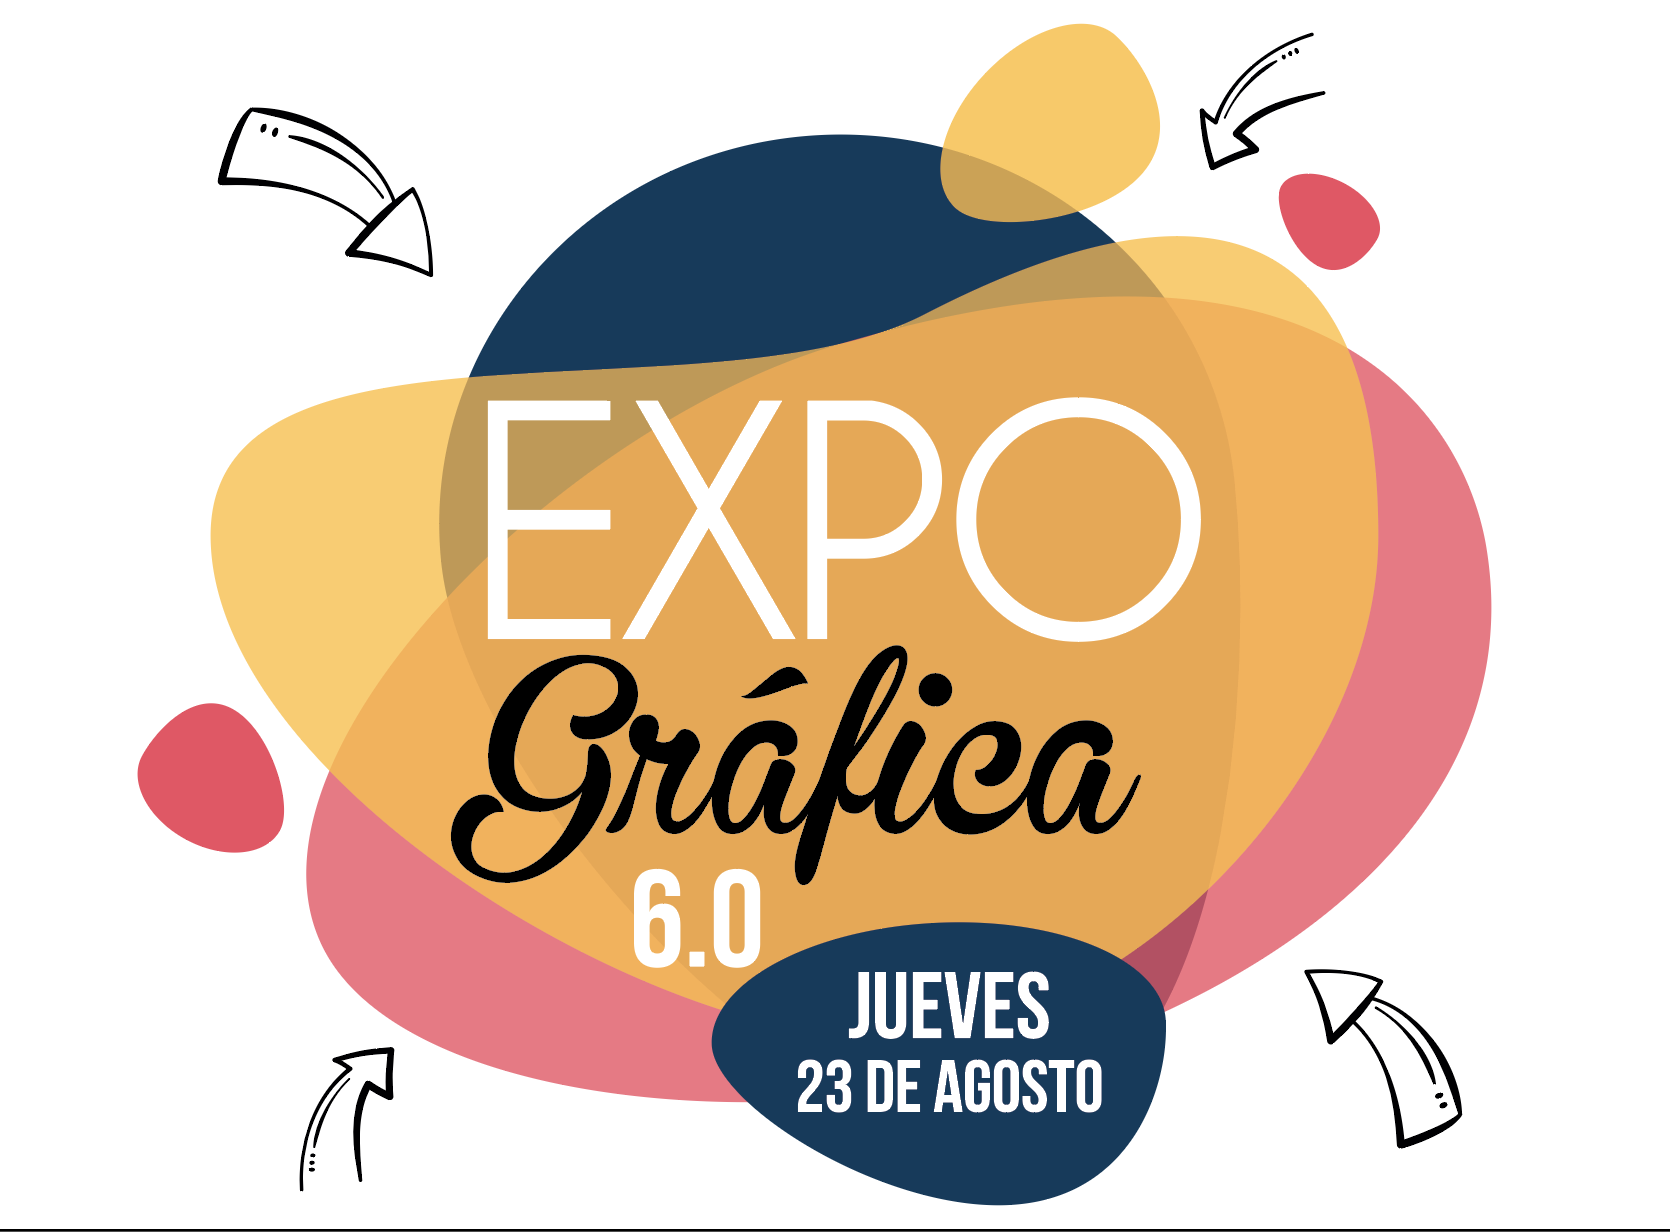 Expo Gráfica 6.0